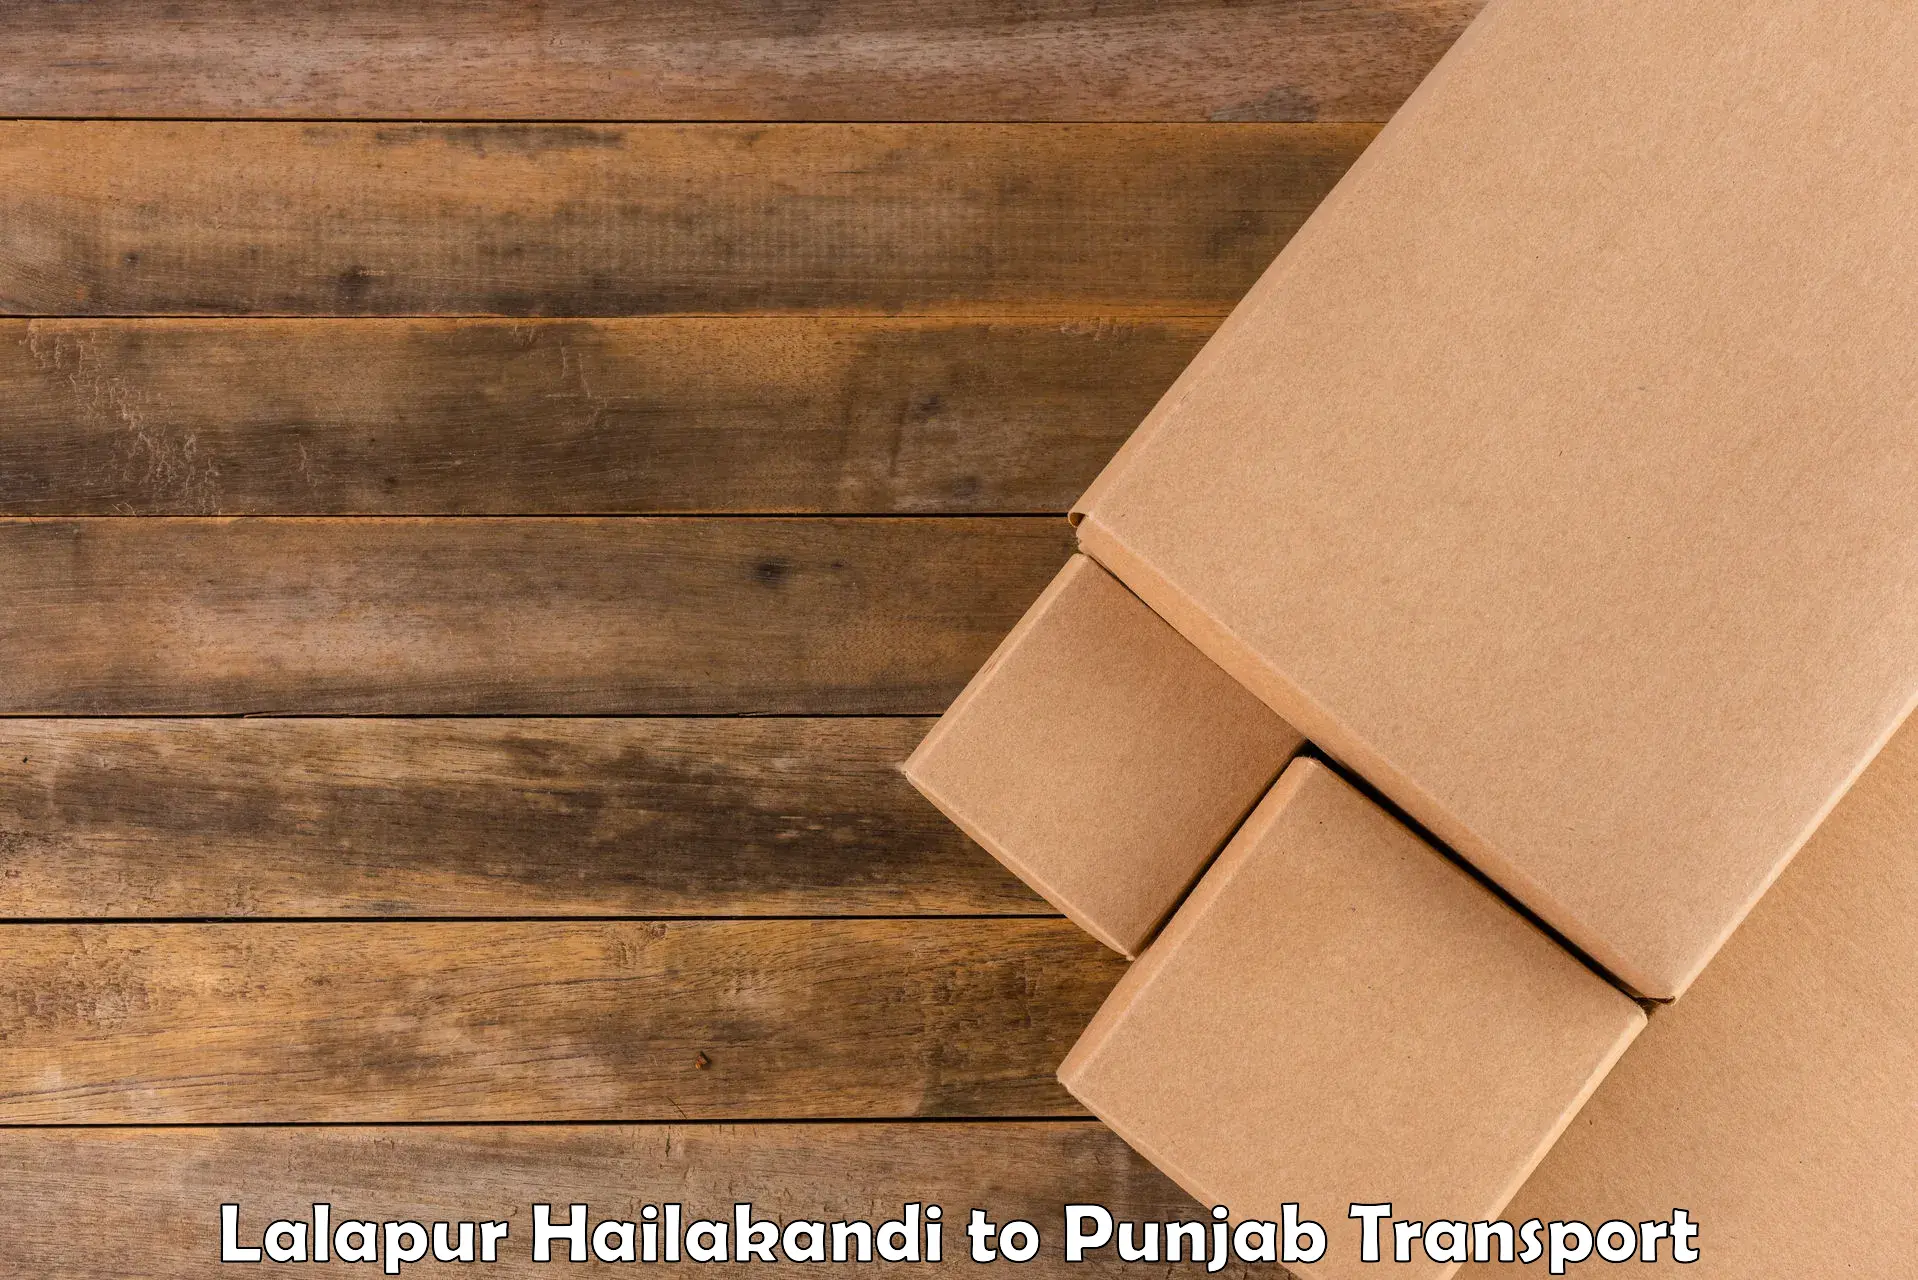 Bike shipping service Lalapur Hailakandi to Mohali